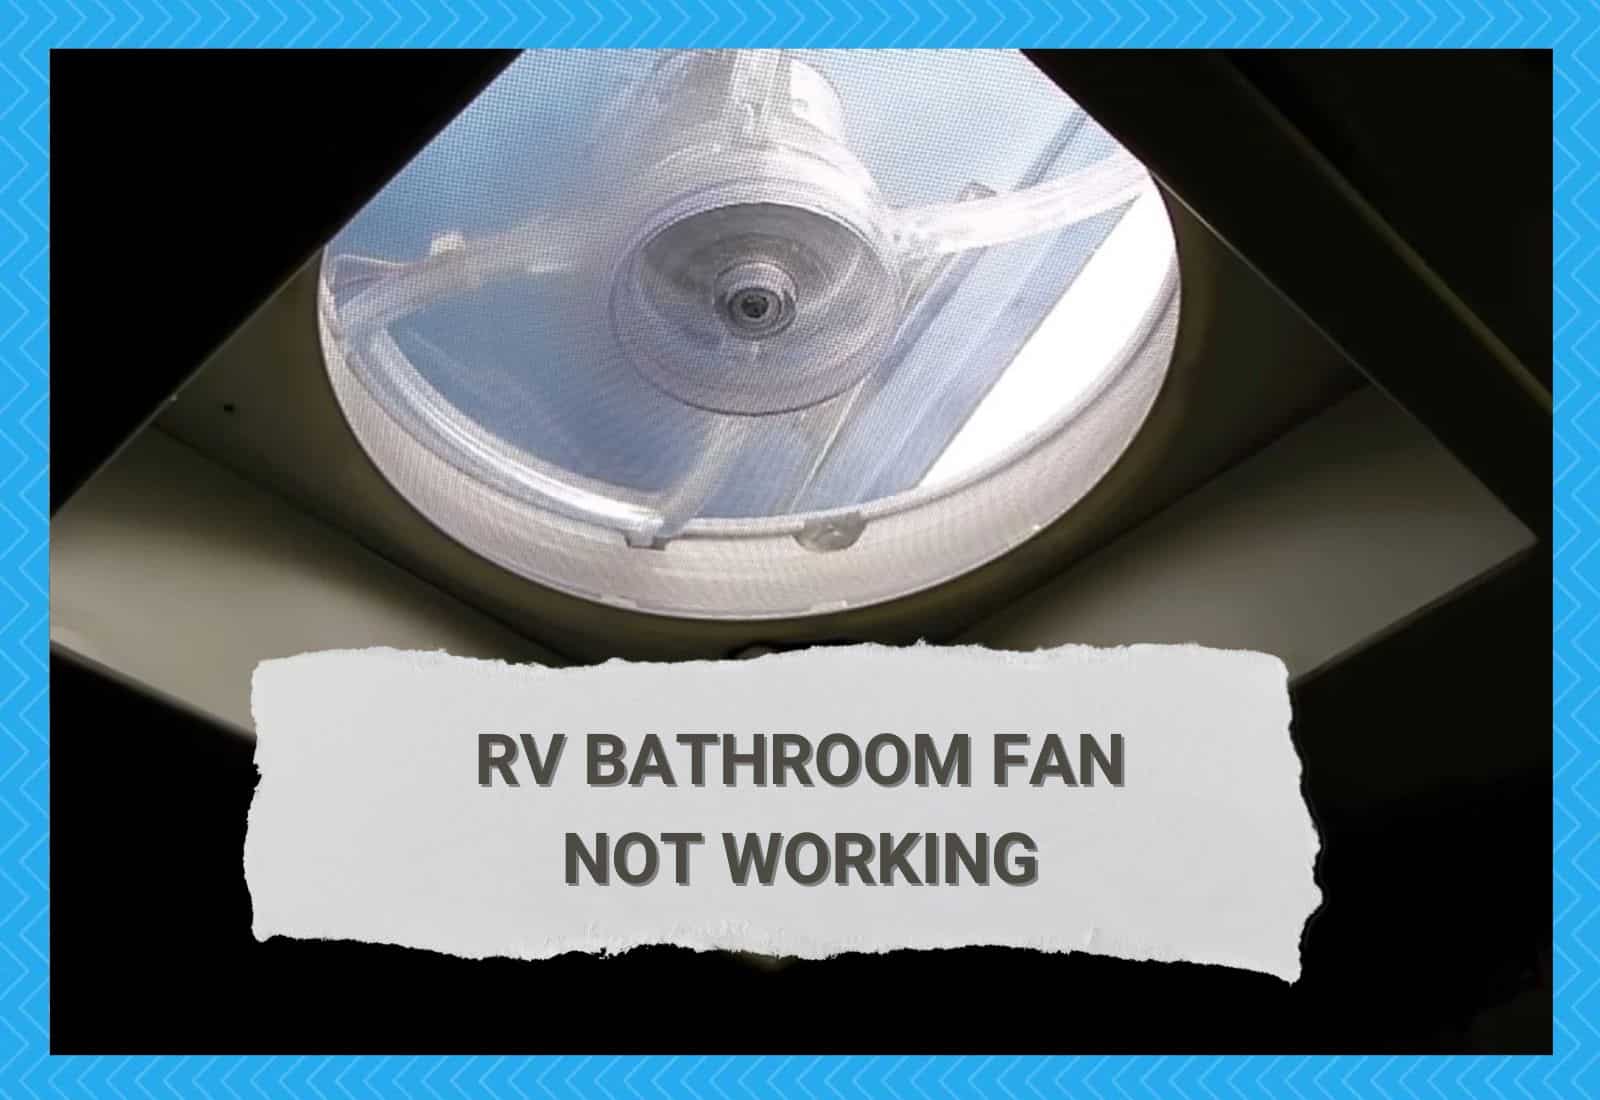 RV Bathroom Fan Not Working